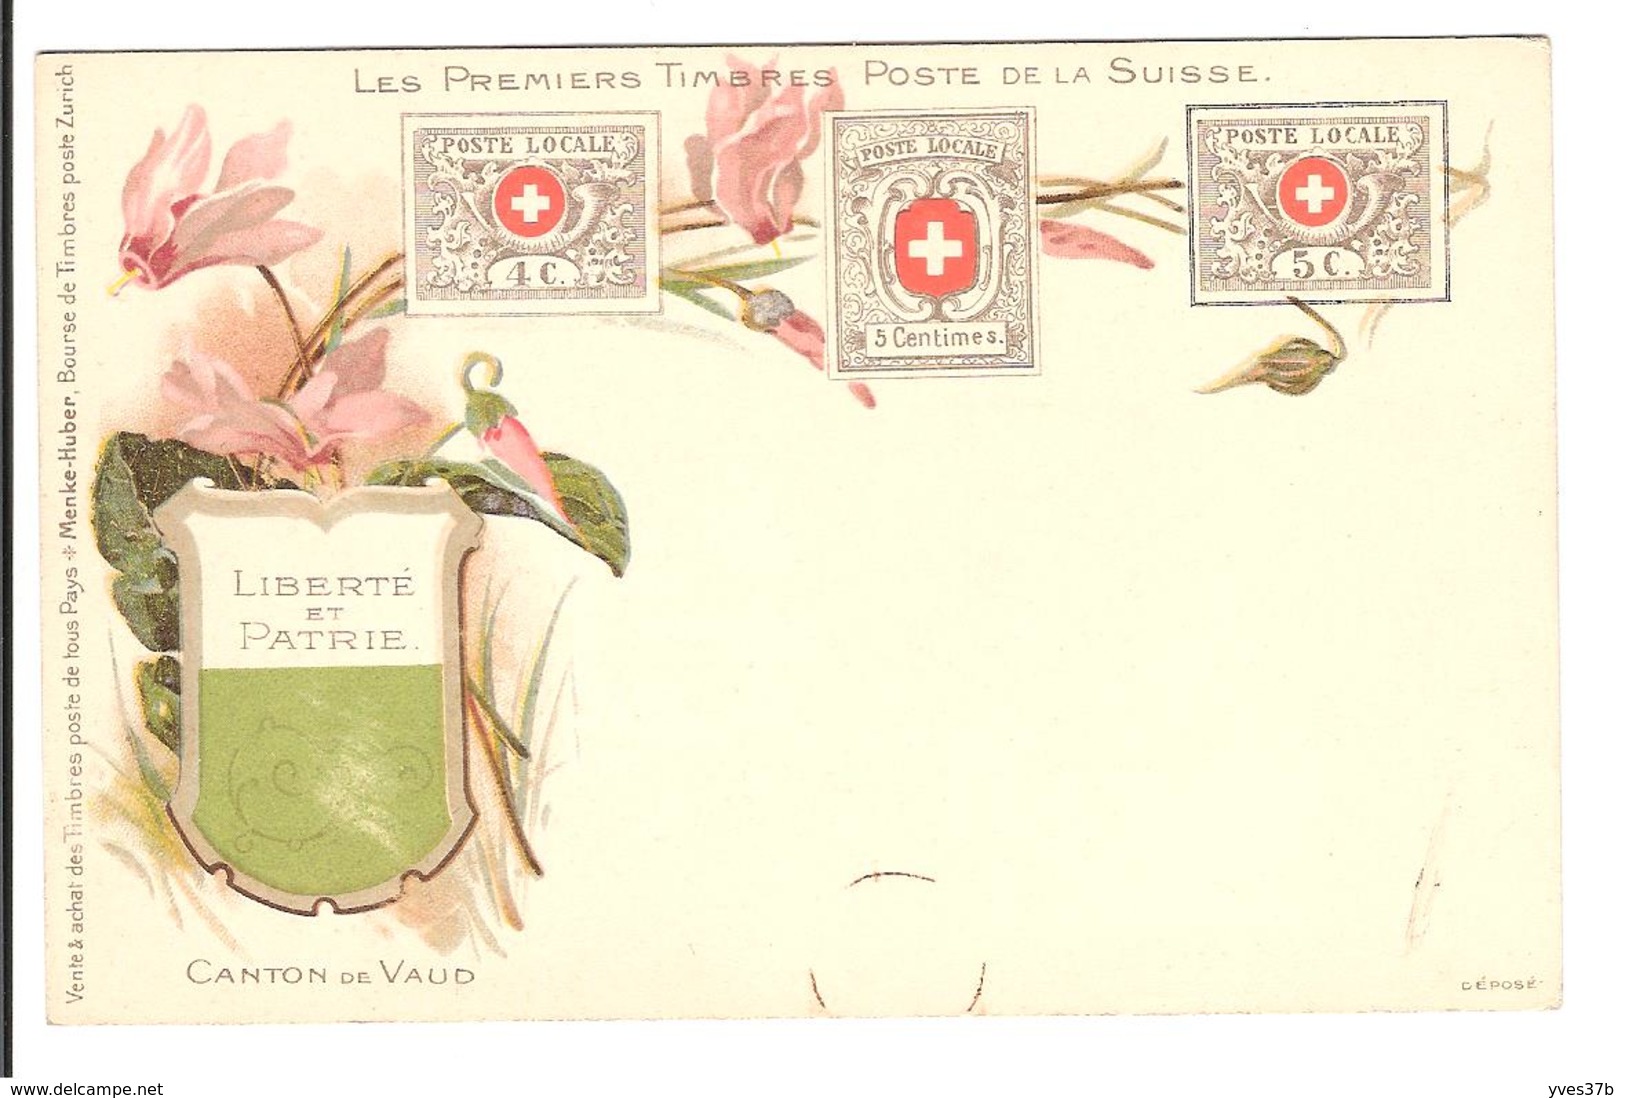 SUISSE - TIMBRES - Les Premiers Timbres Postes De La Suisse - Canton De Vaud - Stamps (pictures)